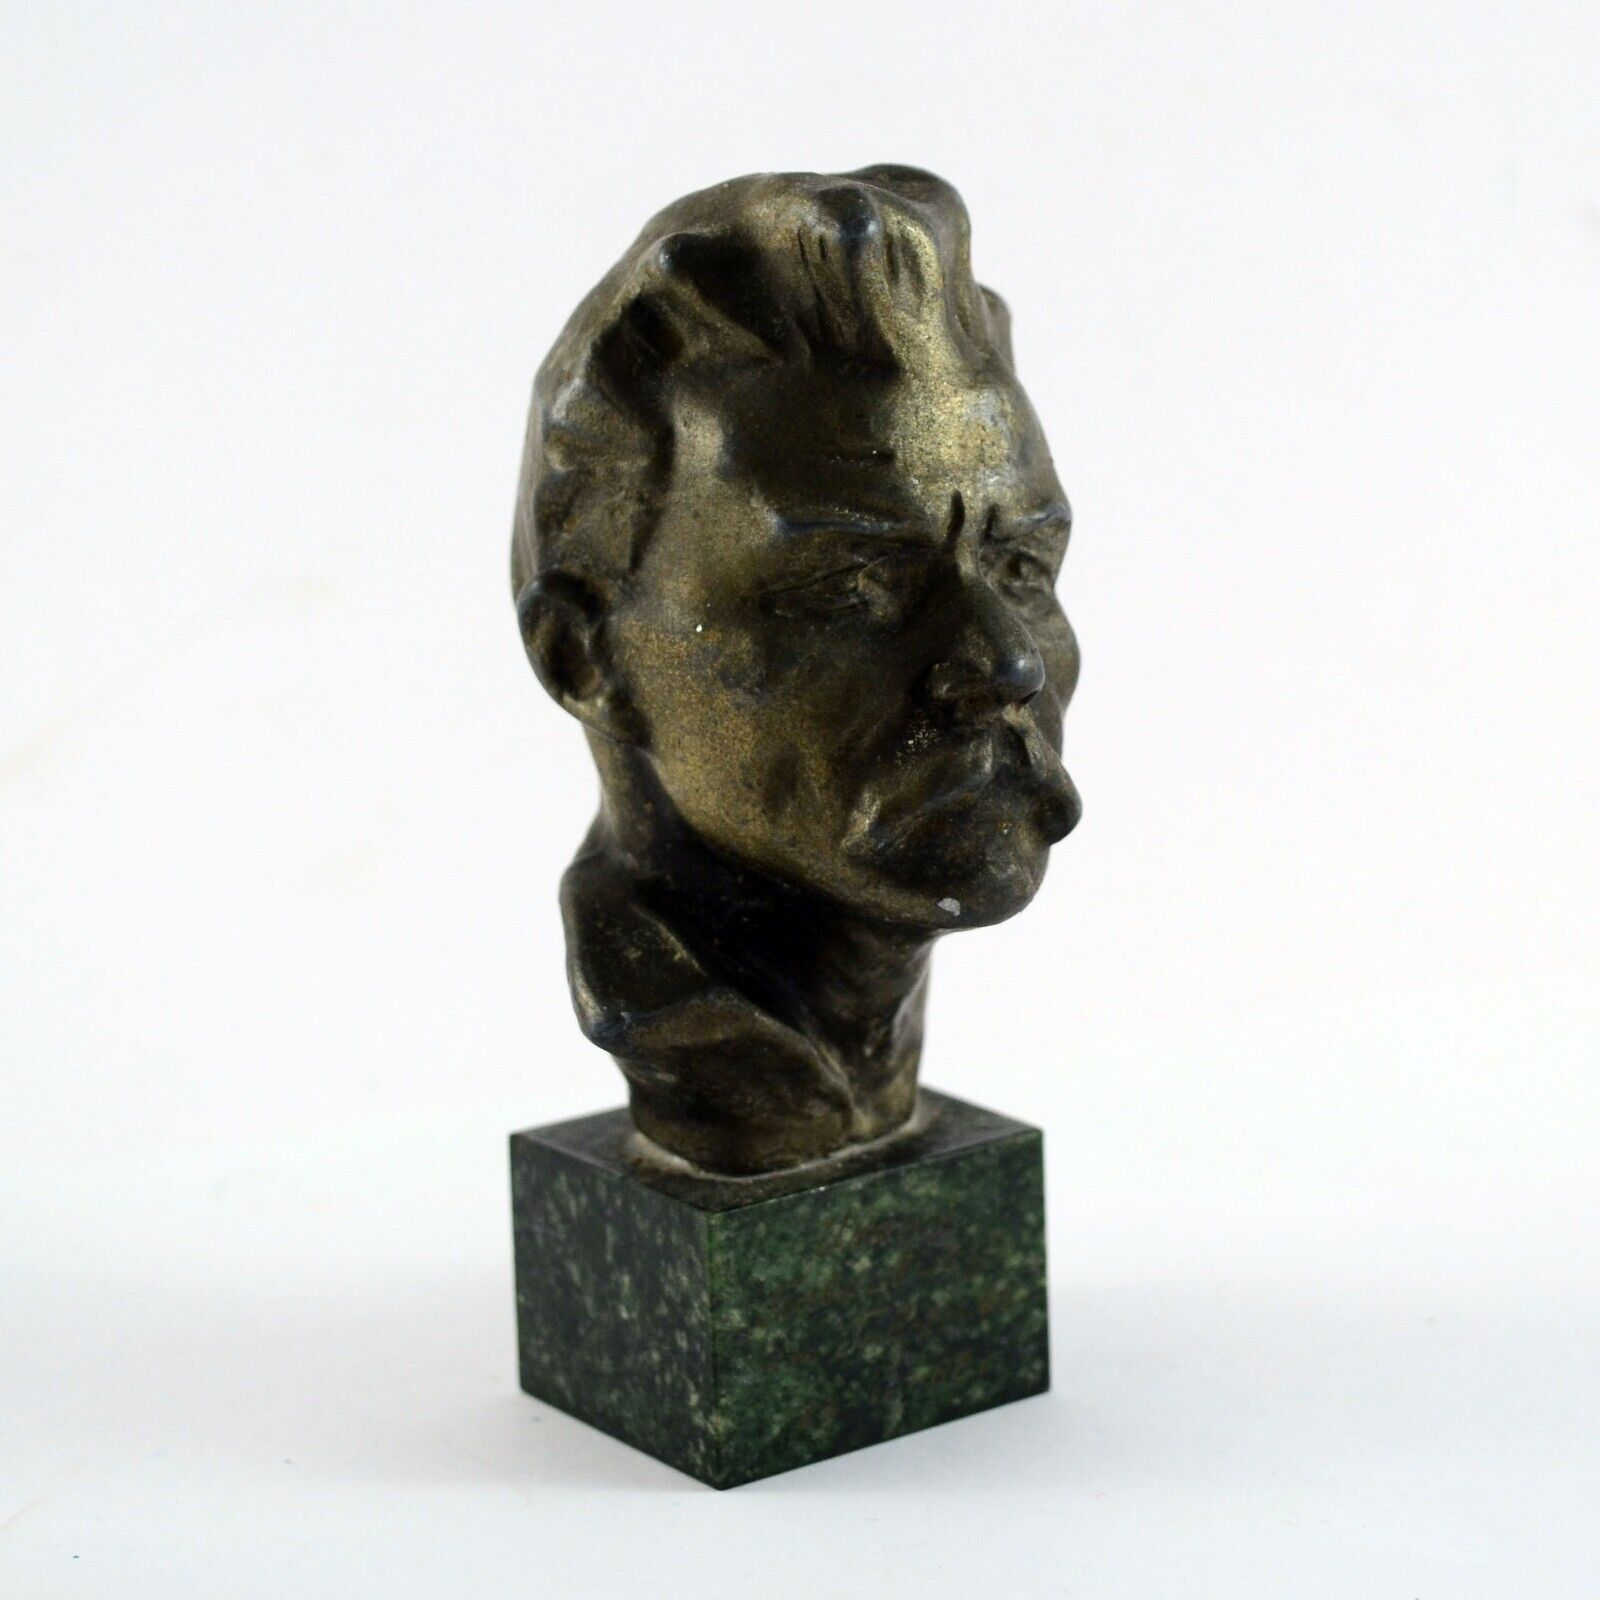 1968 Vintage Soviet USSR Metal Bust of Writer Gorky Sculpture Marble Base